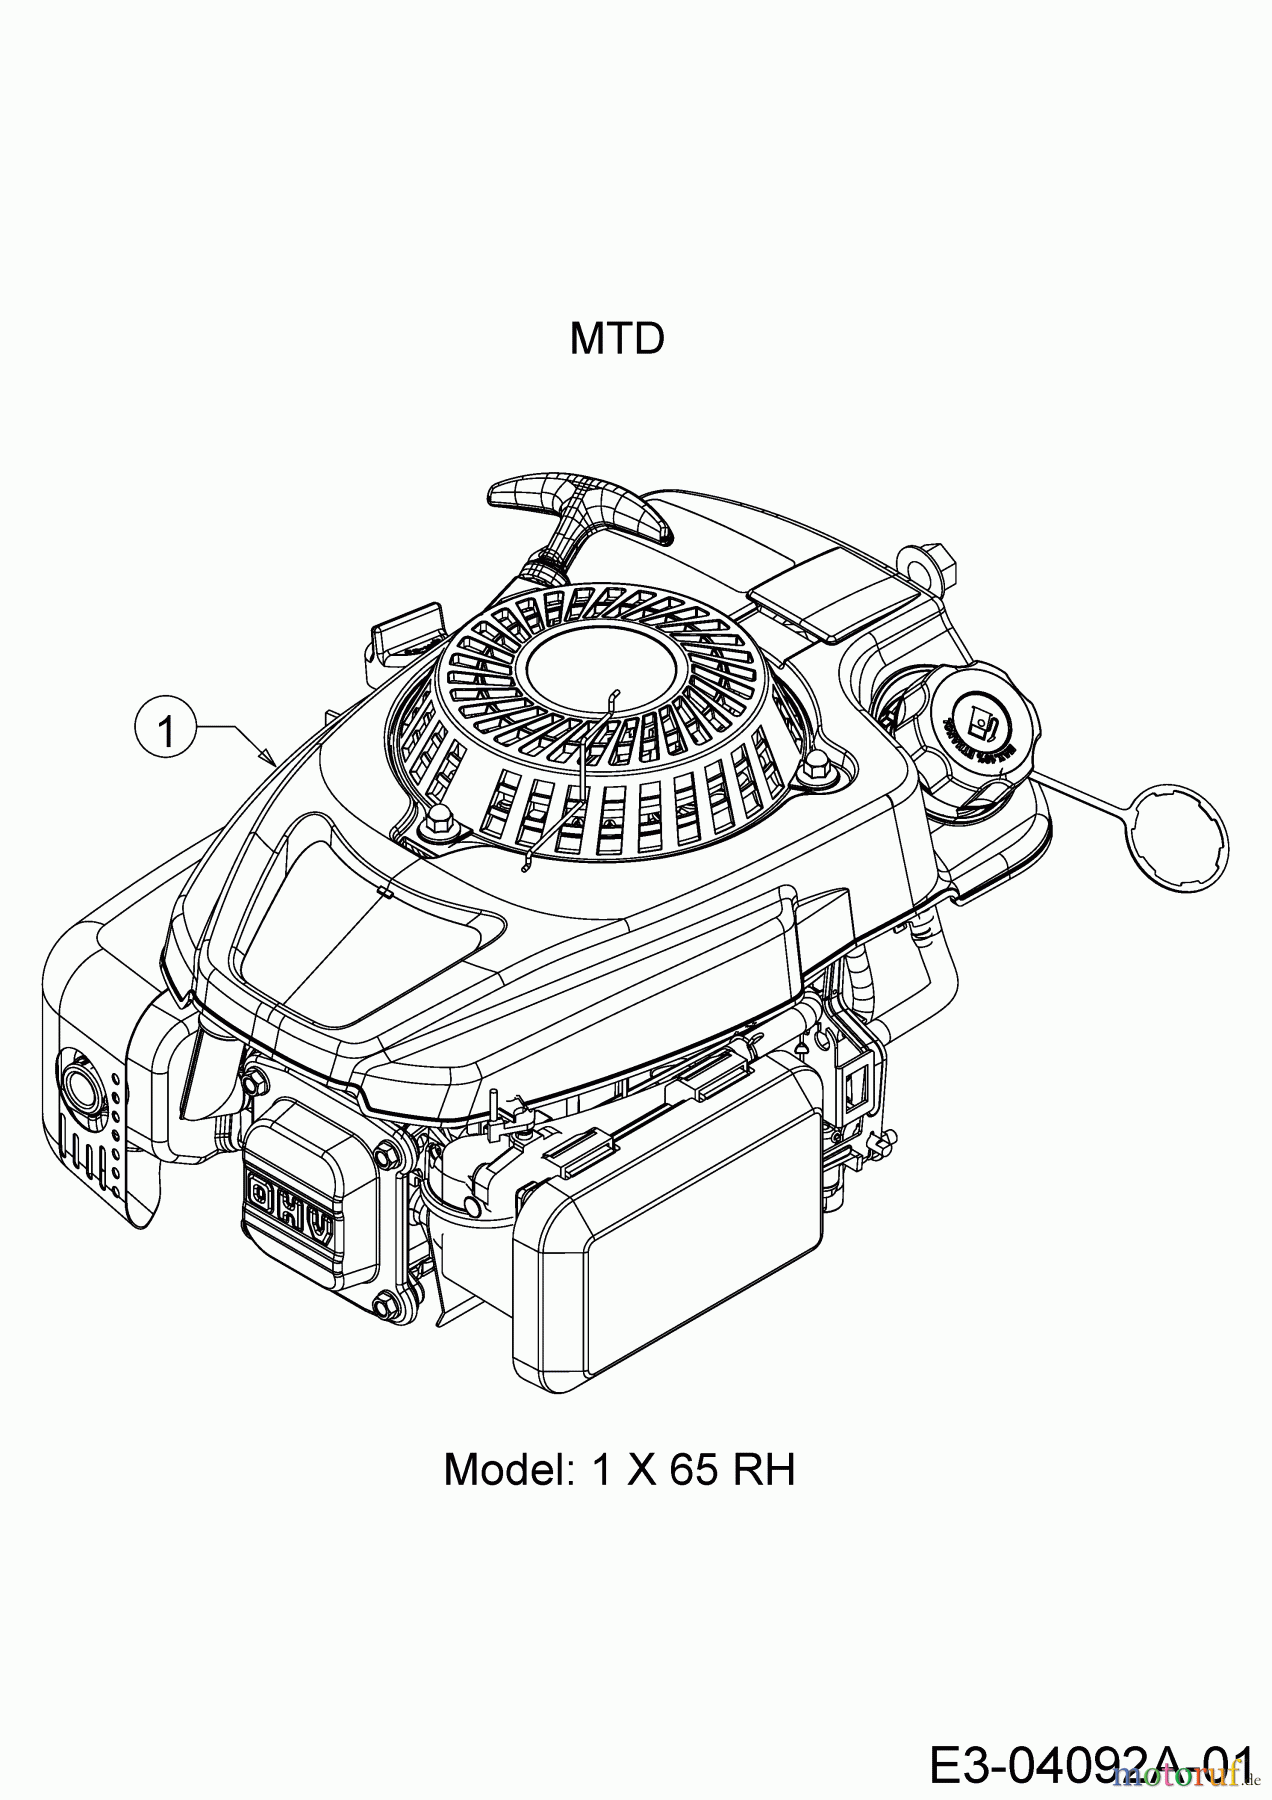  Mastercut Motormäher mit Antrieb MC 53 SPO 12A-84J6659  (2016) Motor MTD